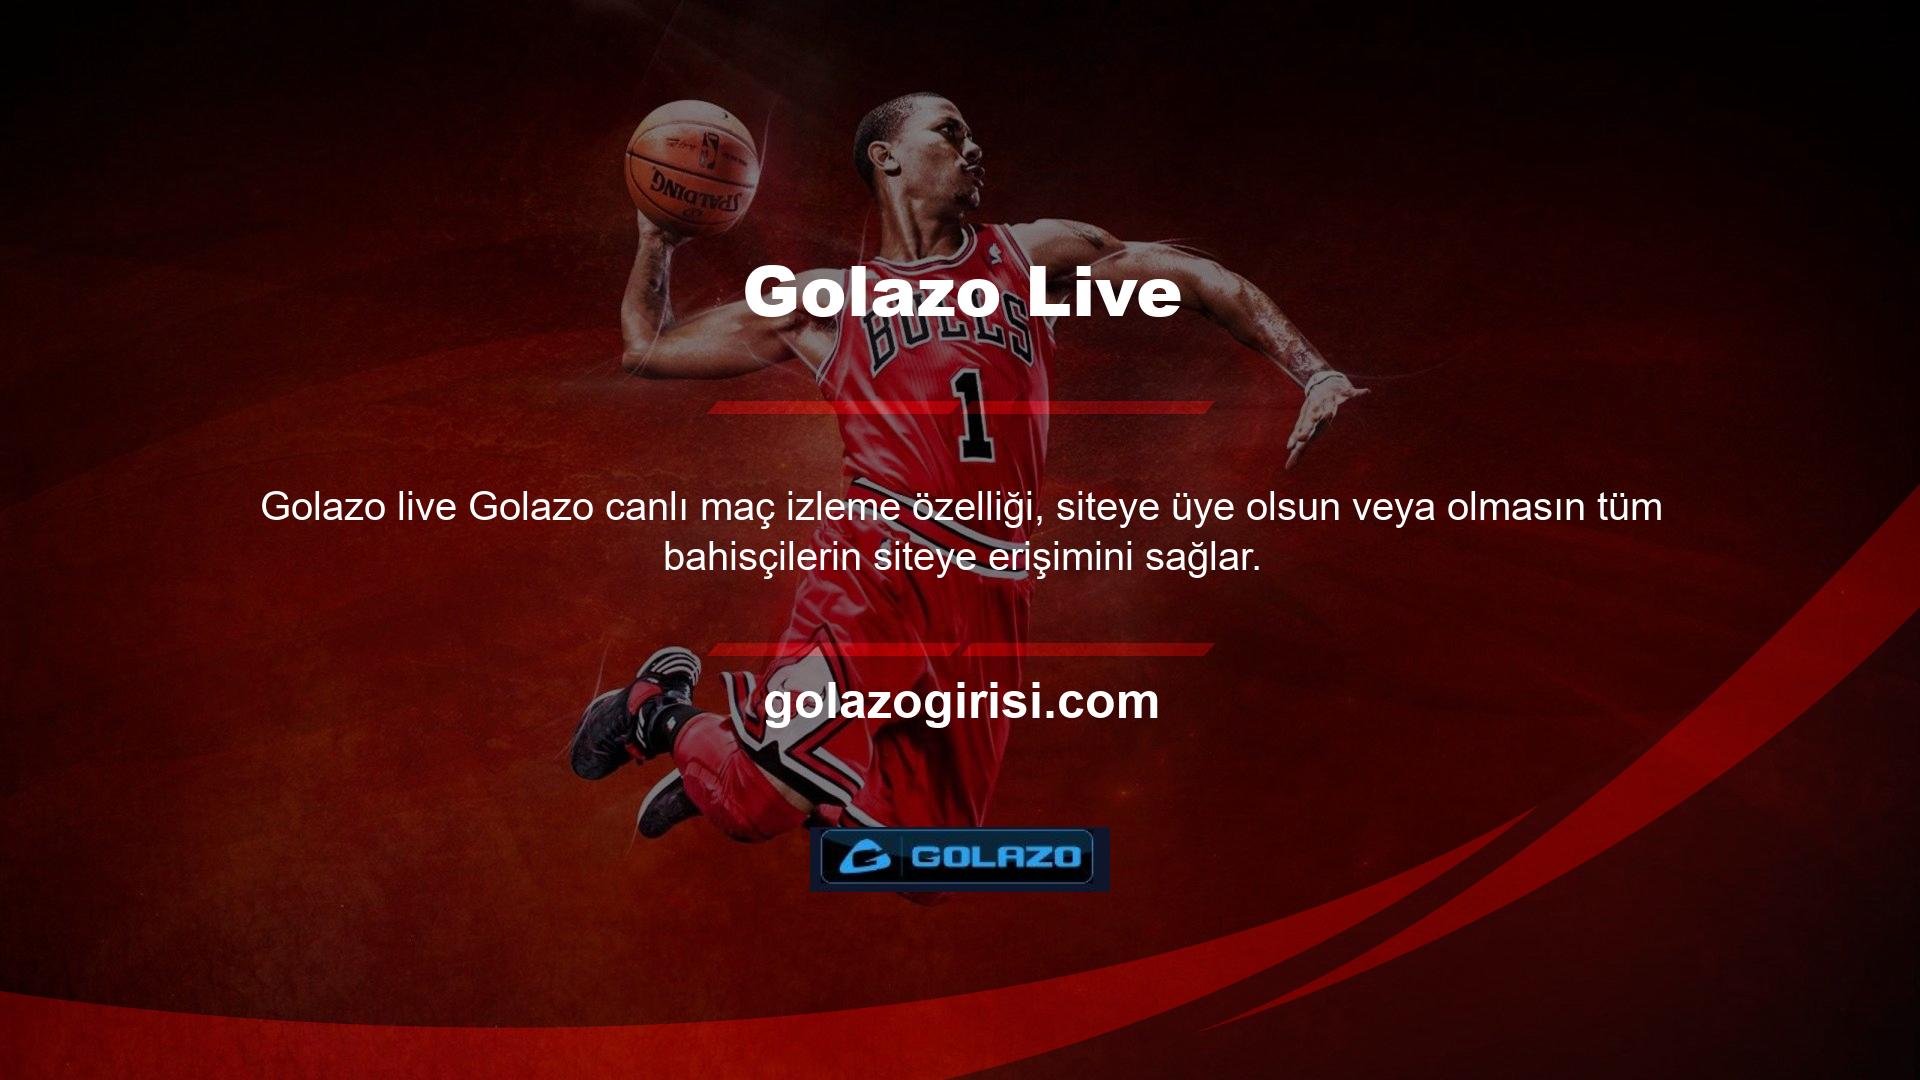 Golazo Live, kullanıcıların yüksek kaliteli canlı spor etkinliklerini kesintisiz olarak izleyebilecekleri anlamına gelir